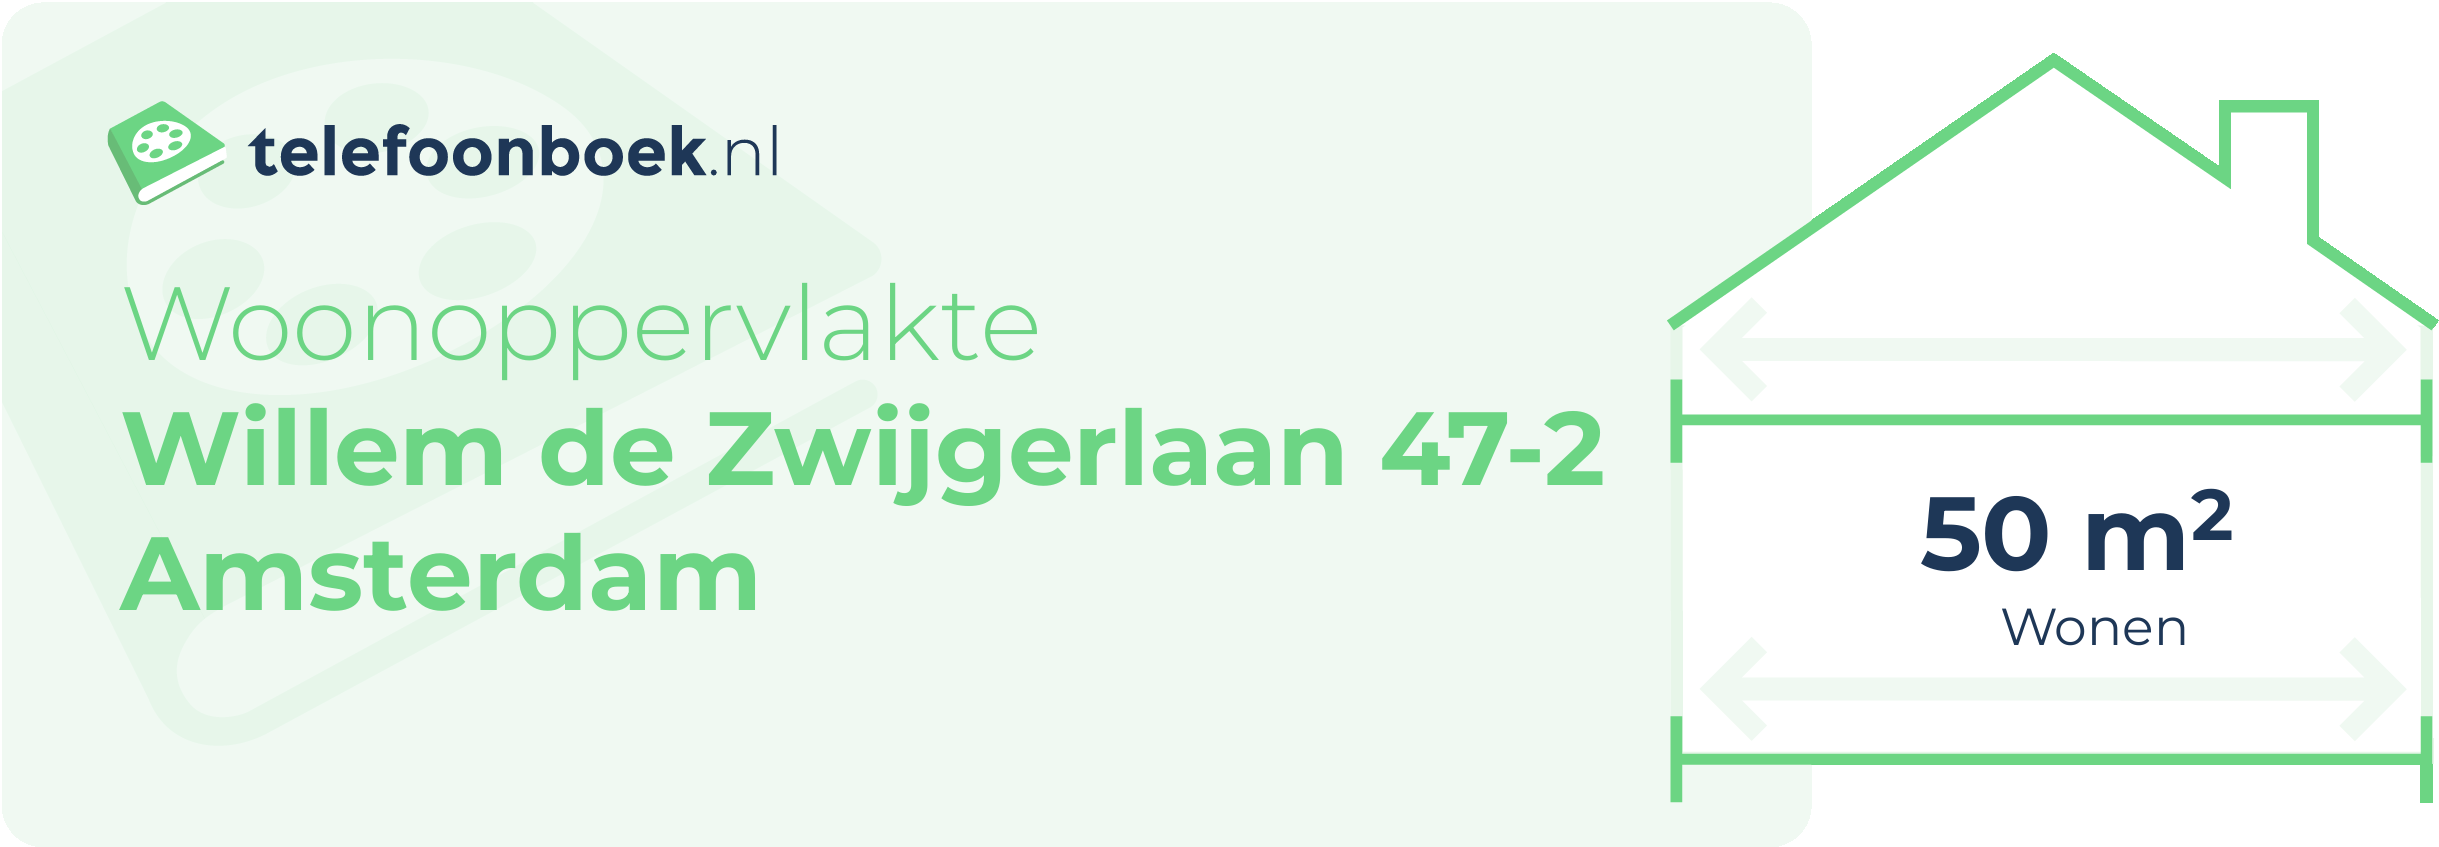 Woonoppervlakte Willem De Zwijgerlaan 47-2 Amsterdam